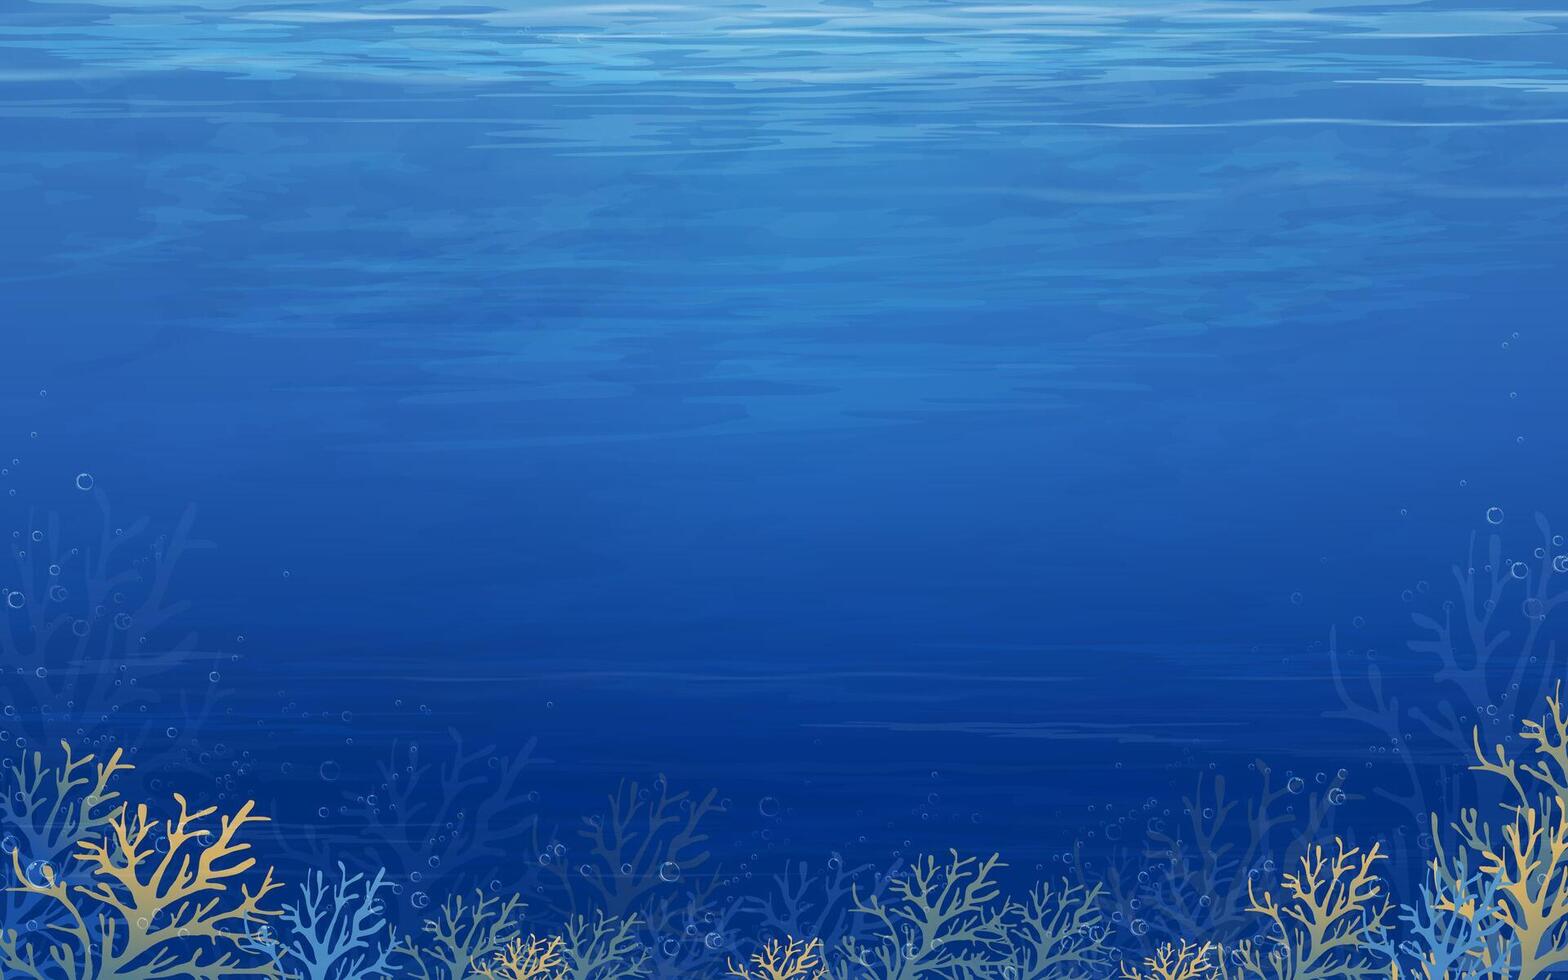 under vattnet scen i djup blå hav för sommar bakgrund med tropisk havsbotten med rev och solljus lysande genom vatten vågor yta textur vektor